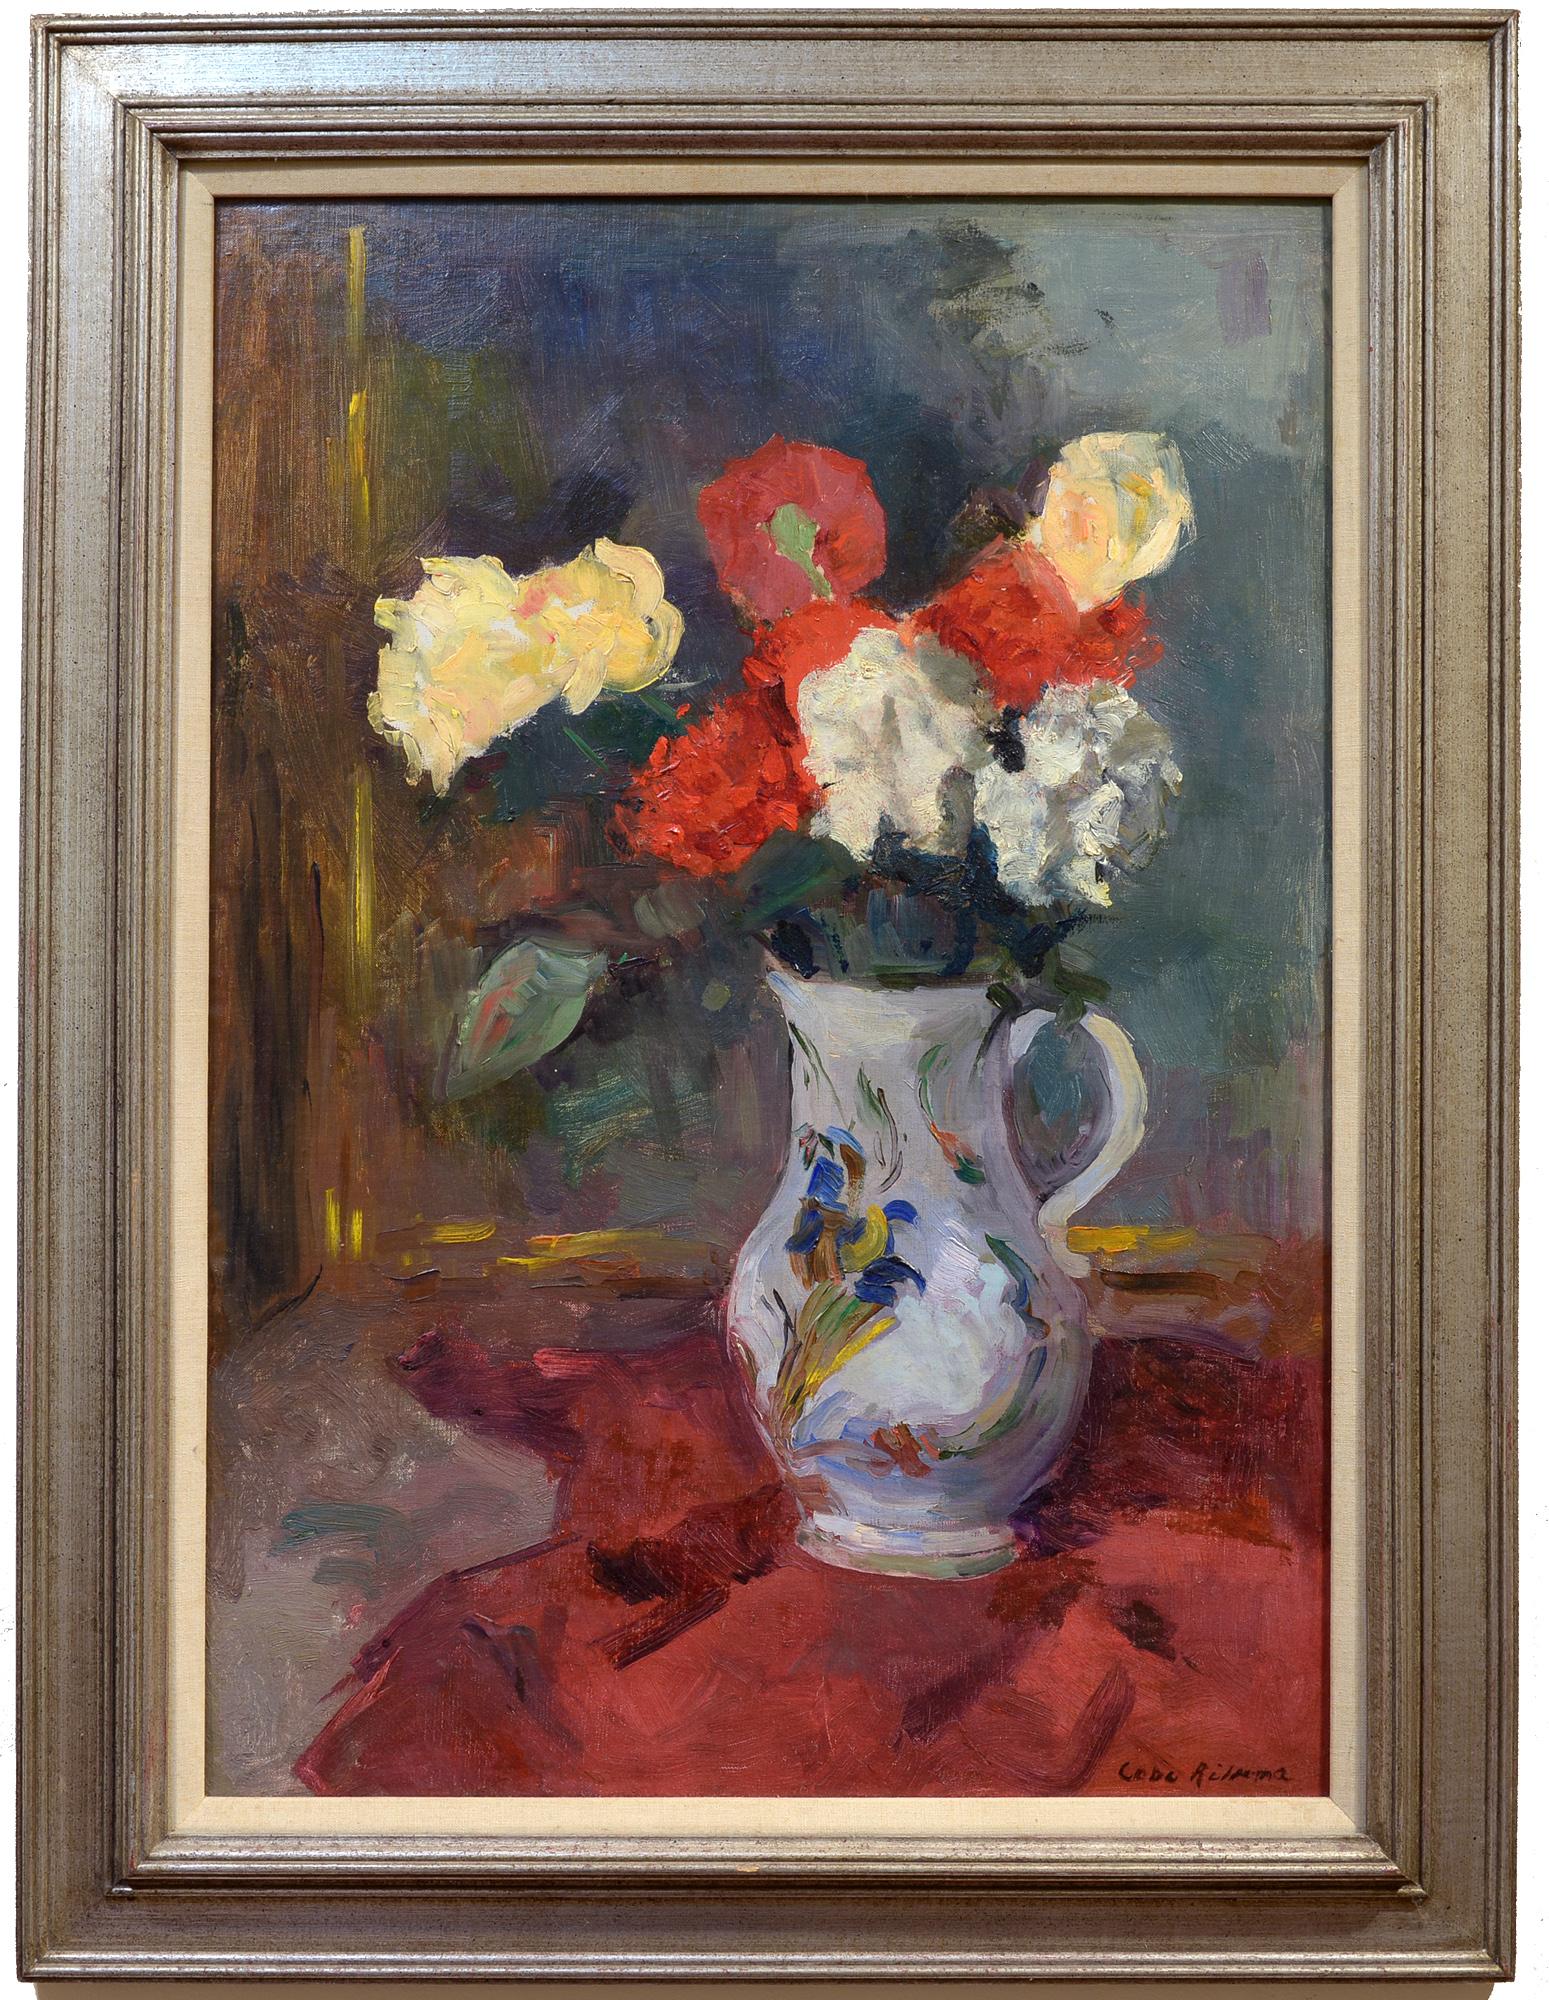 Vaas lernte Bloemen kennen, Blumenstillleben, Niederländisch, Impressionist – Painting von Coba Ritsema